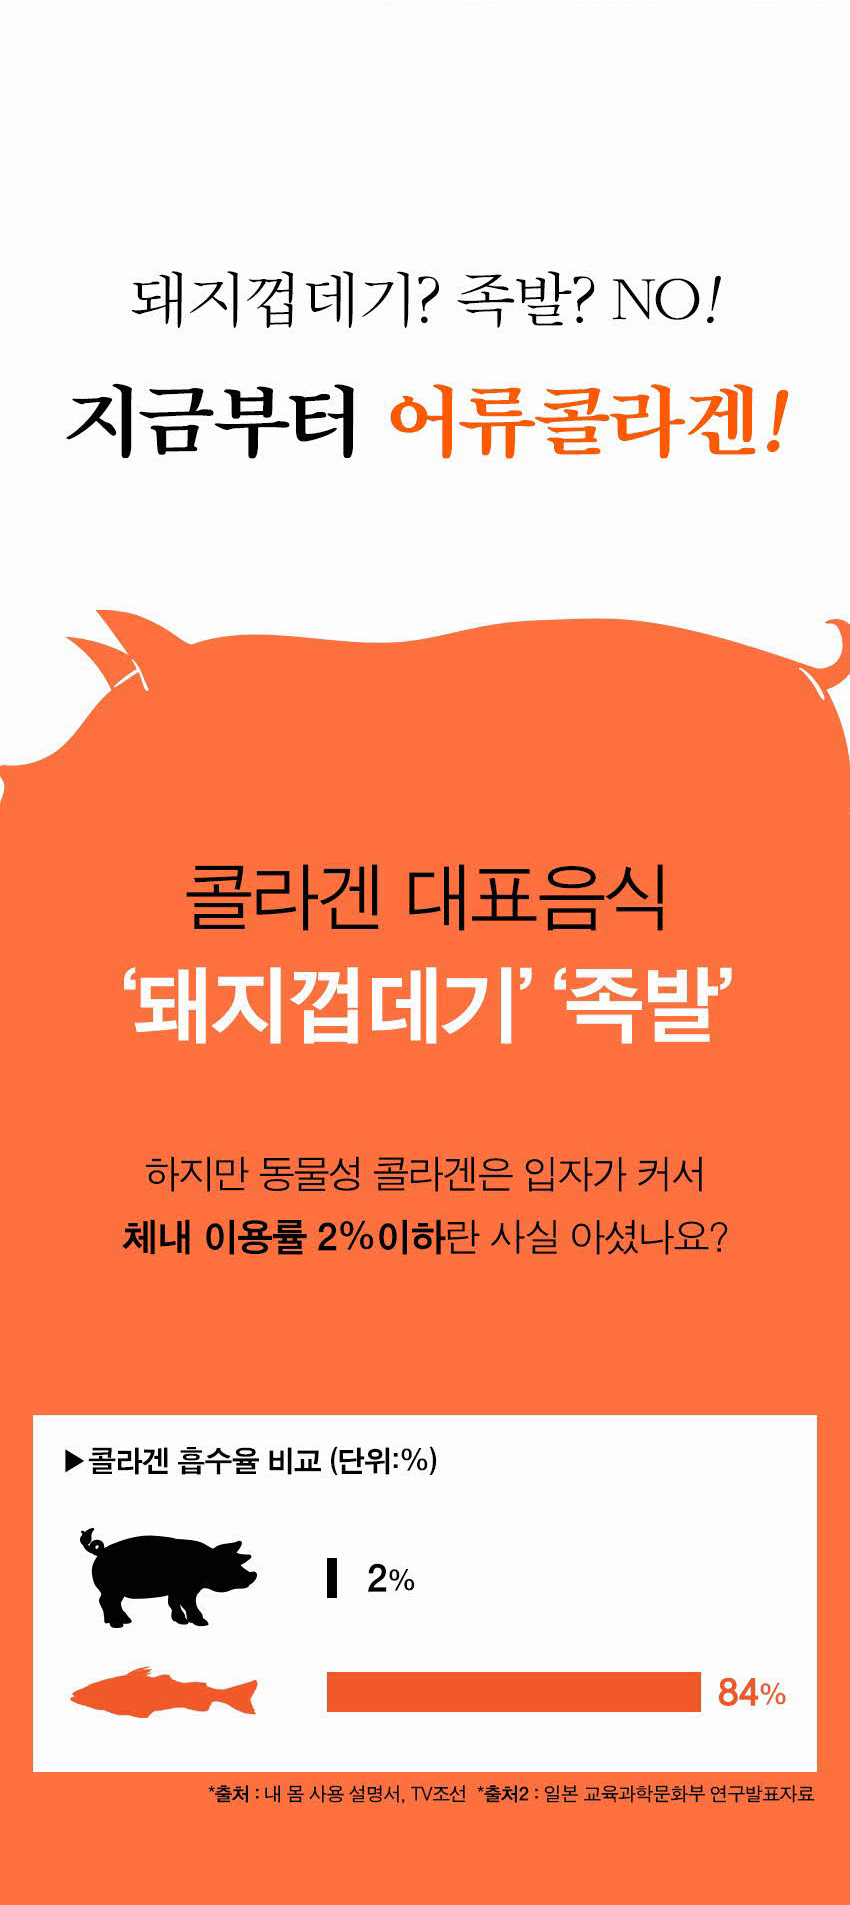 韓國食品-[자연공유] 바삭한 황태칩 [치즈] 30g